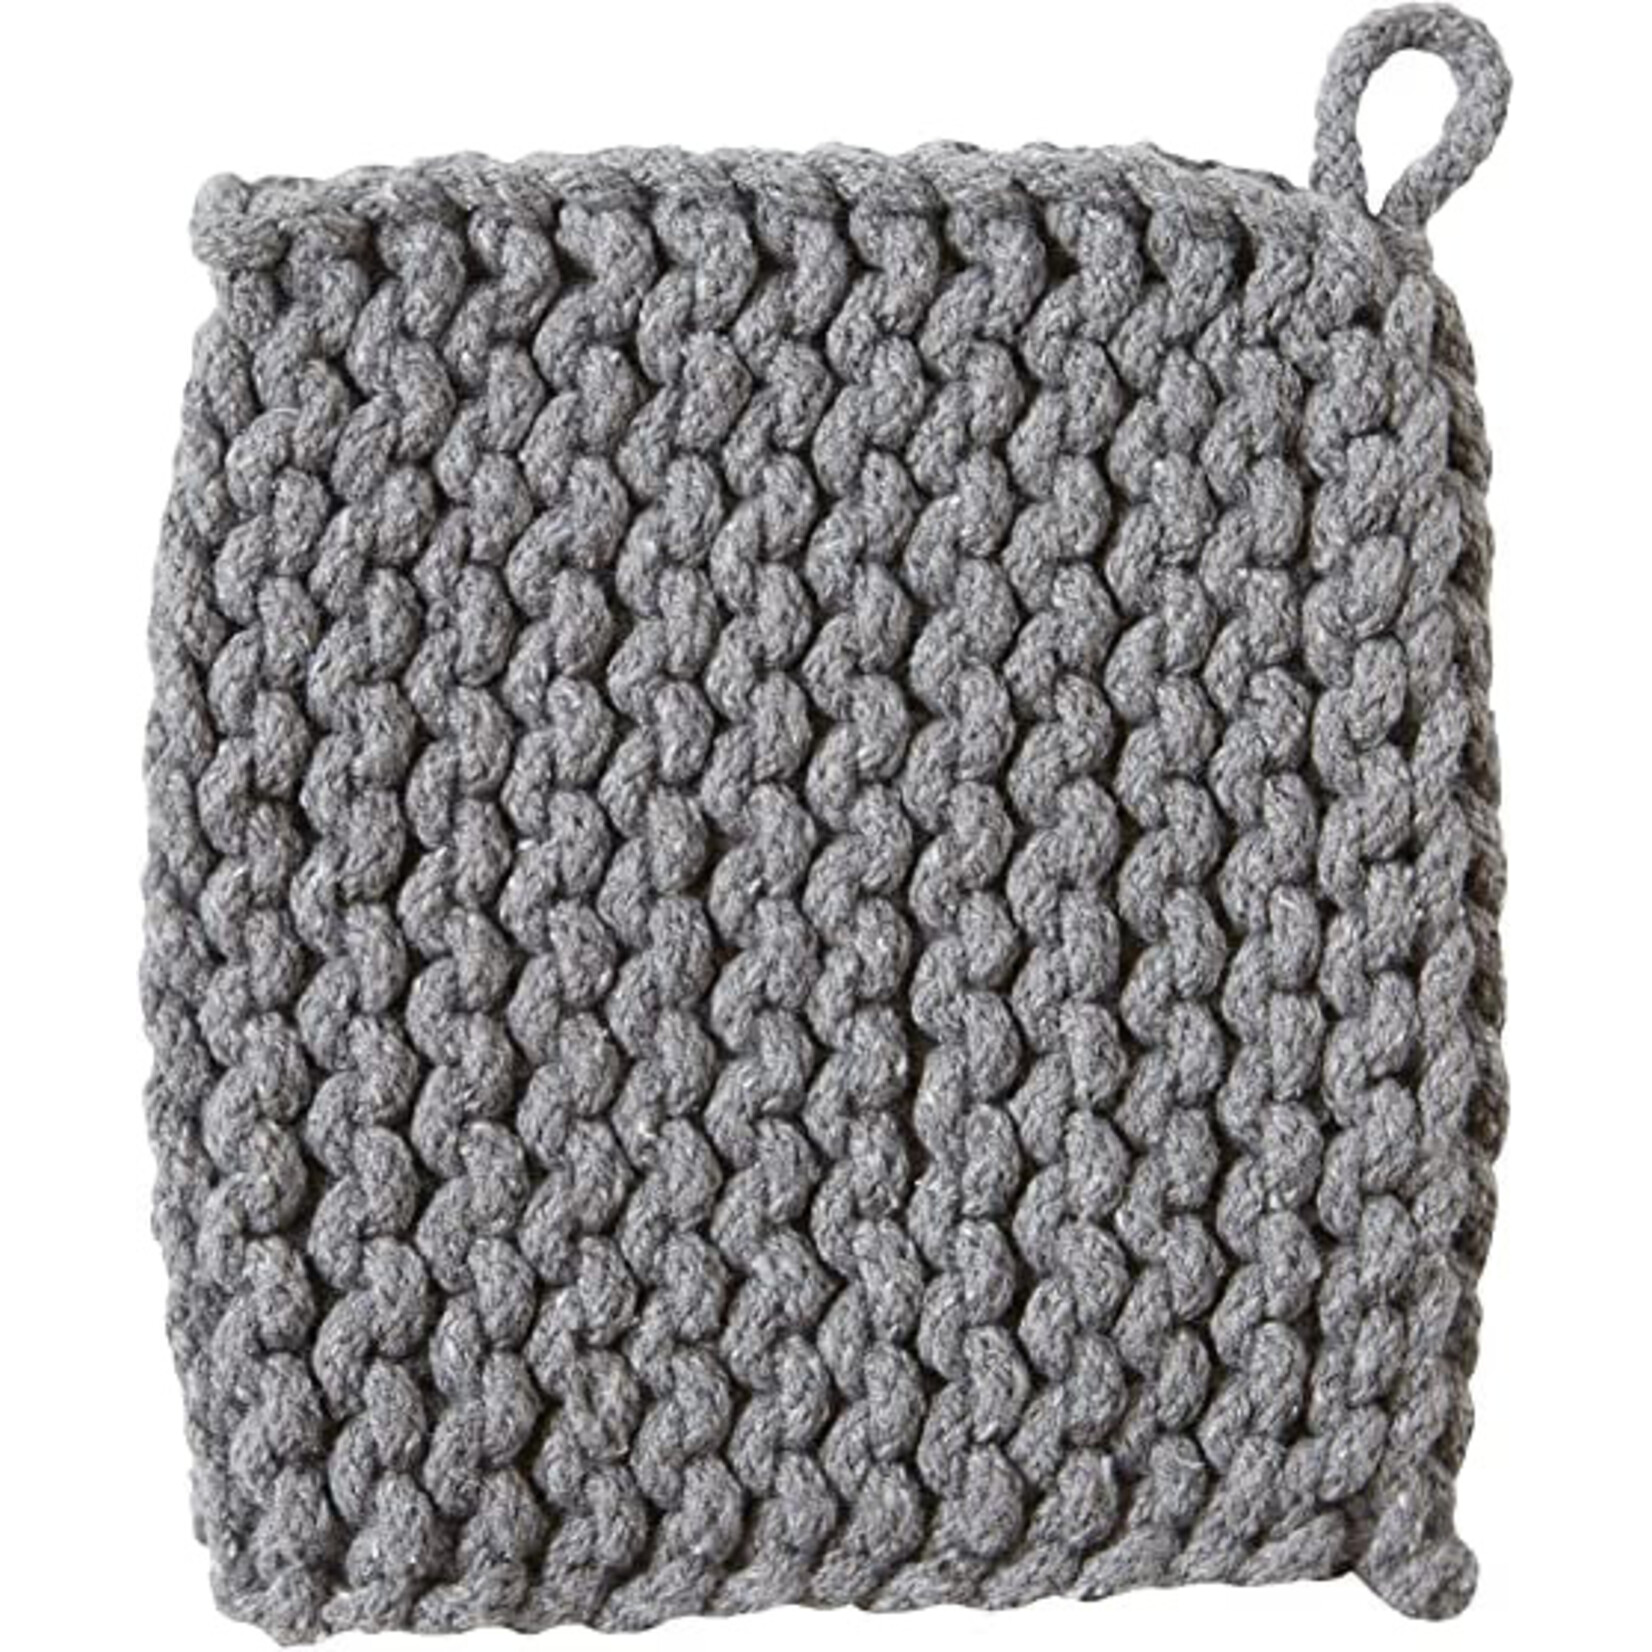 Tag True Living Crochet Trivet